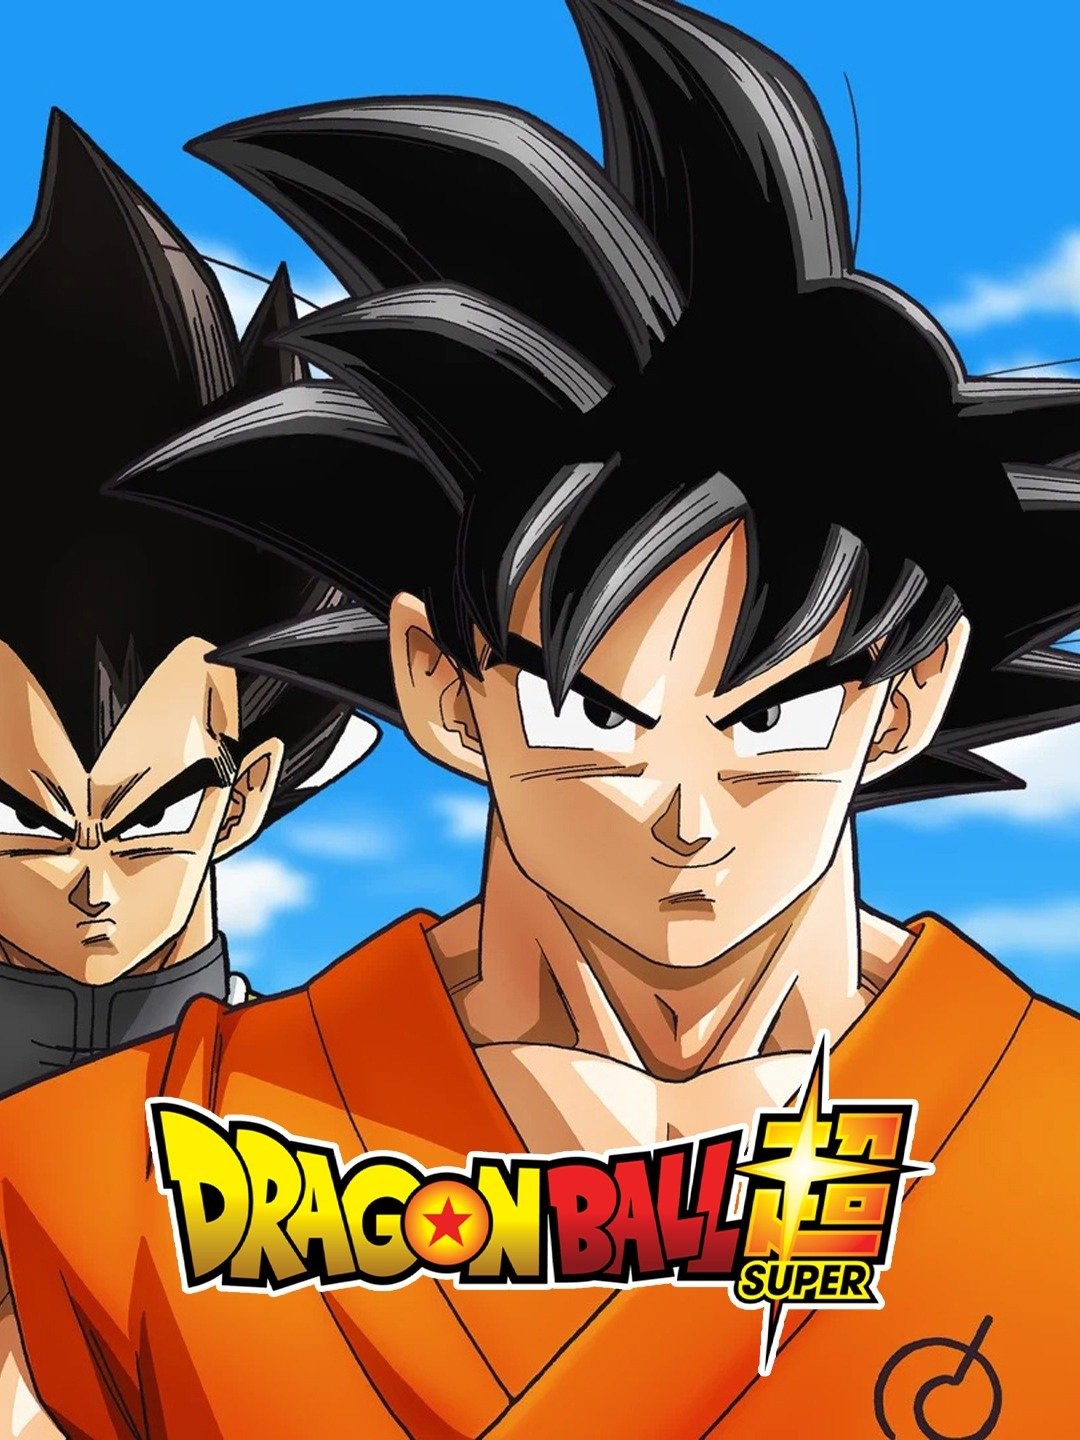 Watch Dragon Ball Z season 3 episode 21 streaming online